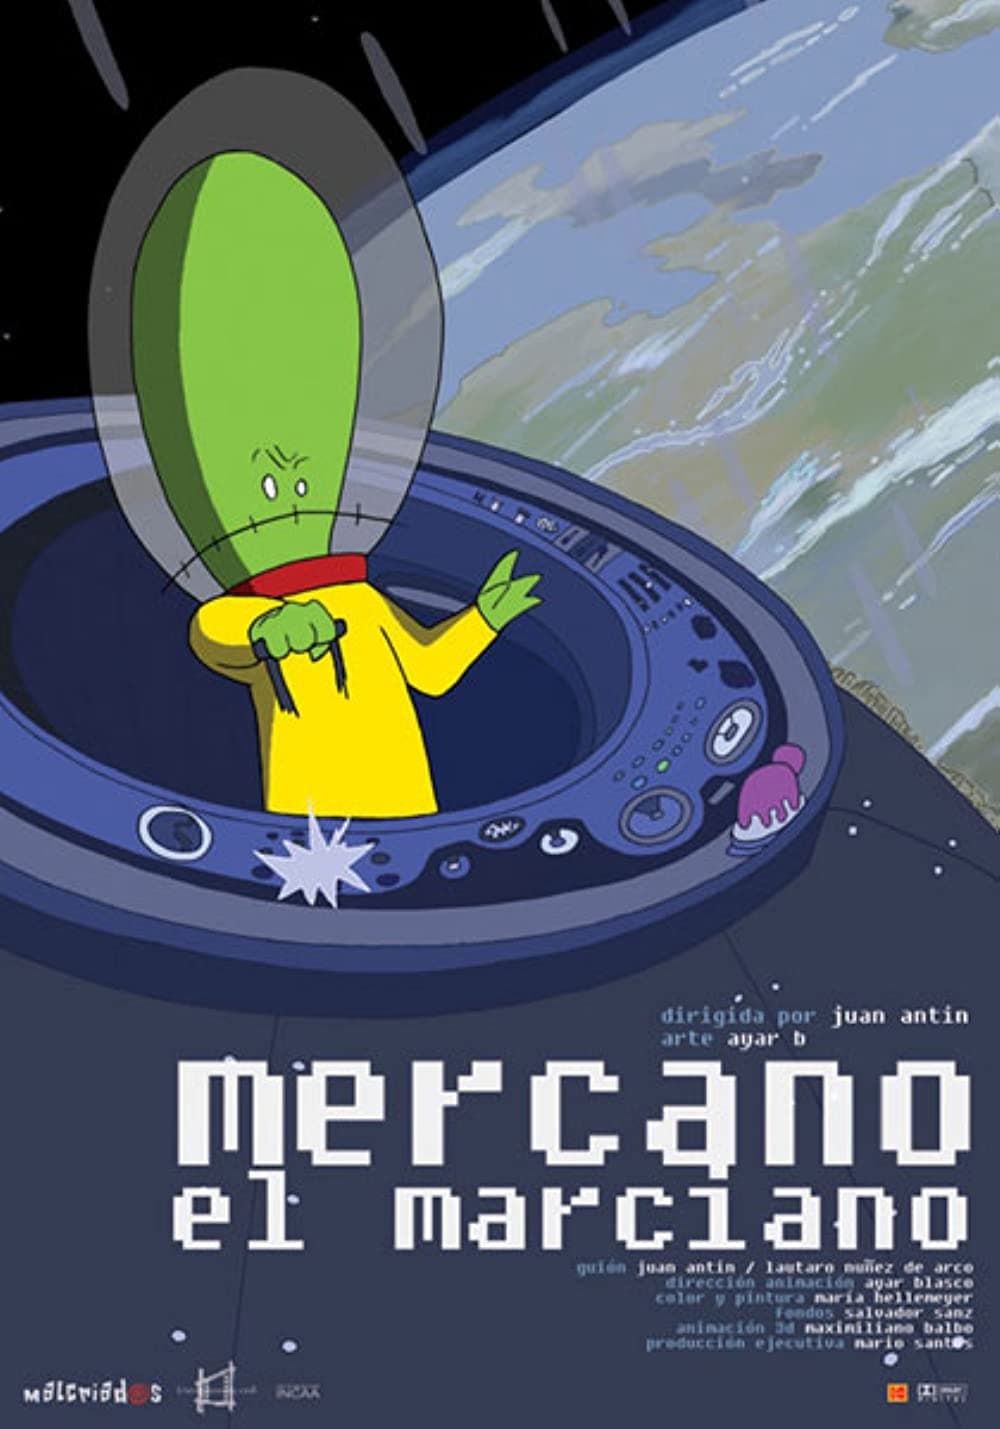 Mercano the Martian